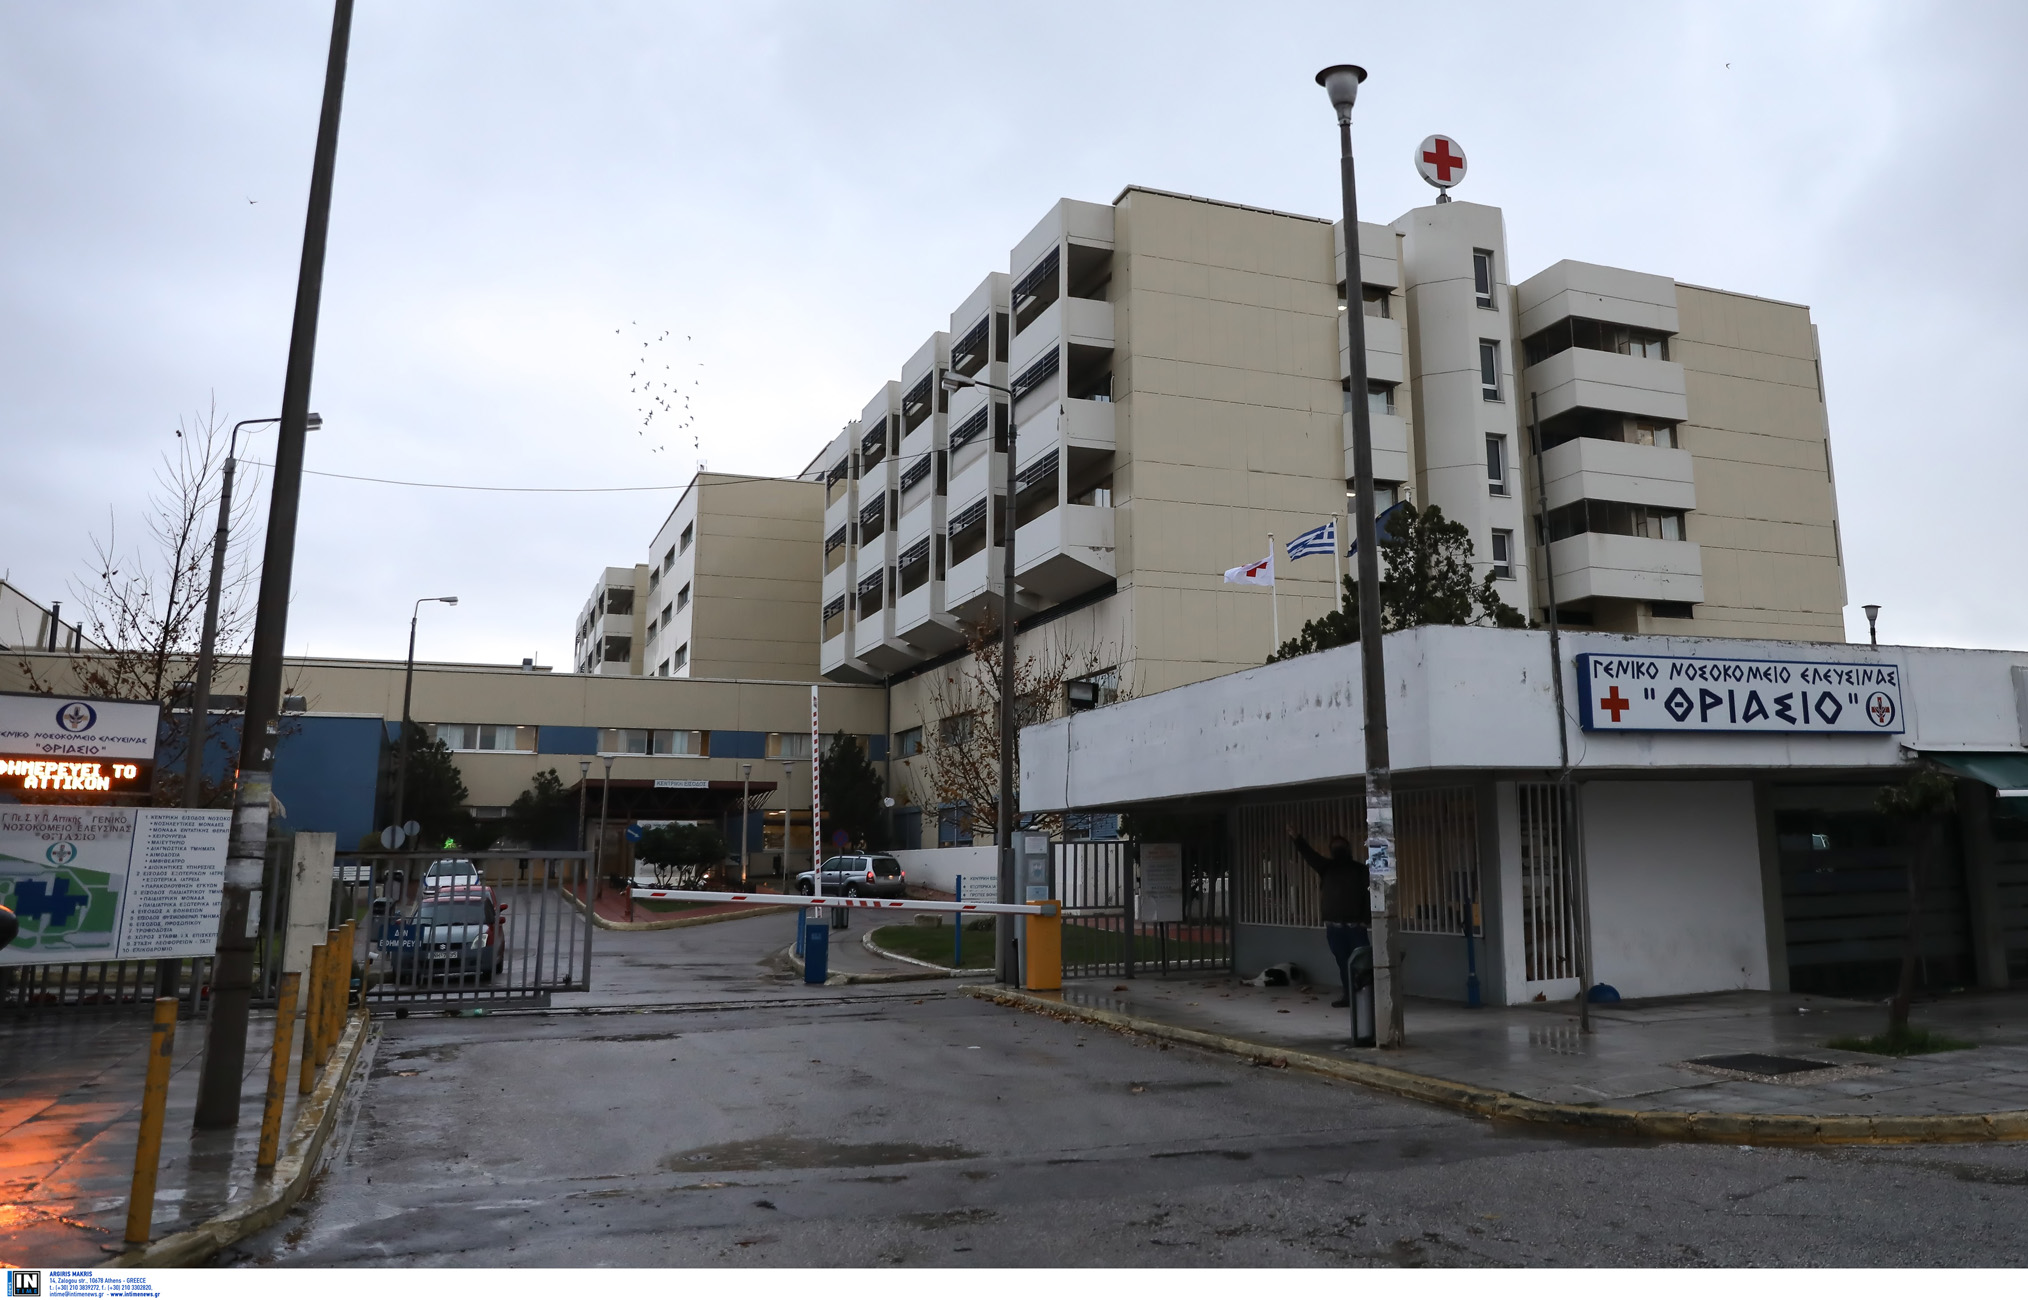 Κικίλιας: Σε νοσοκομείο Covid μετατρέπεται το Θριάσιο – Έκκληση για αυστηρή τήρηση των μέτρων